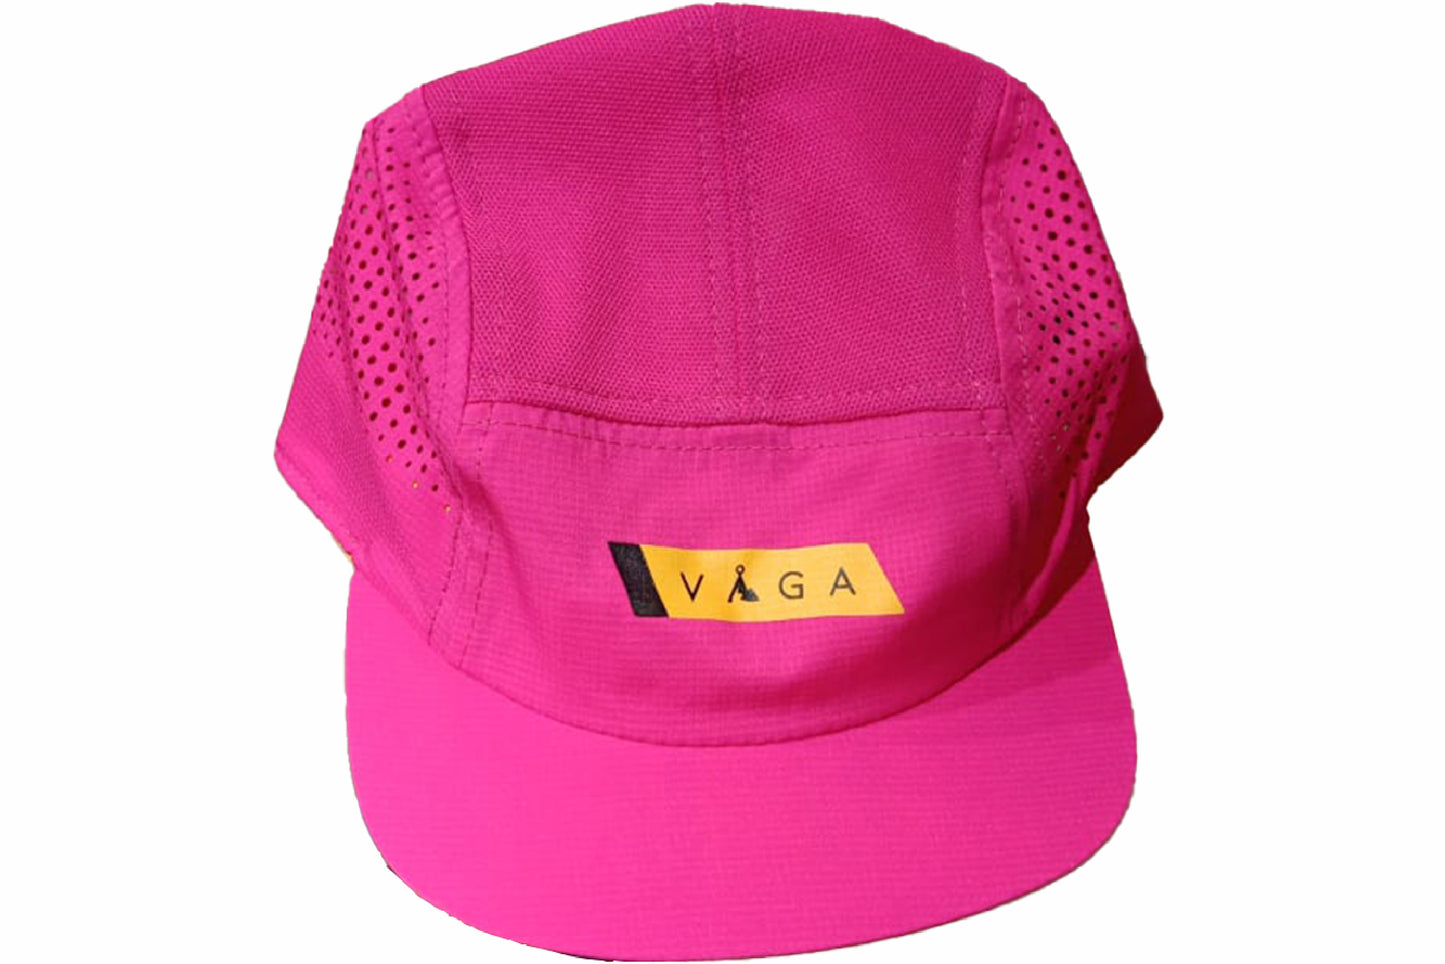 VAGA Feather Racing Cap - Bright Pink/Sunbeam Orange